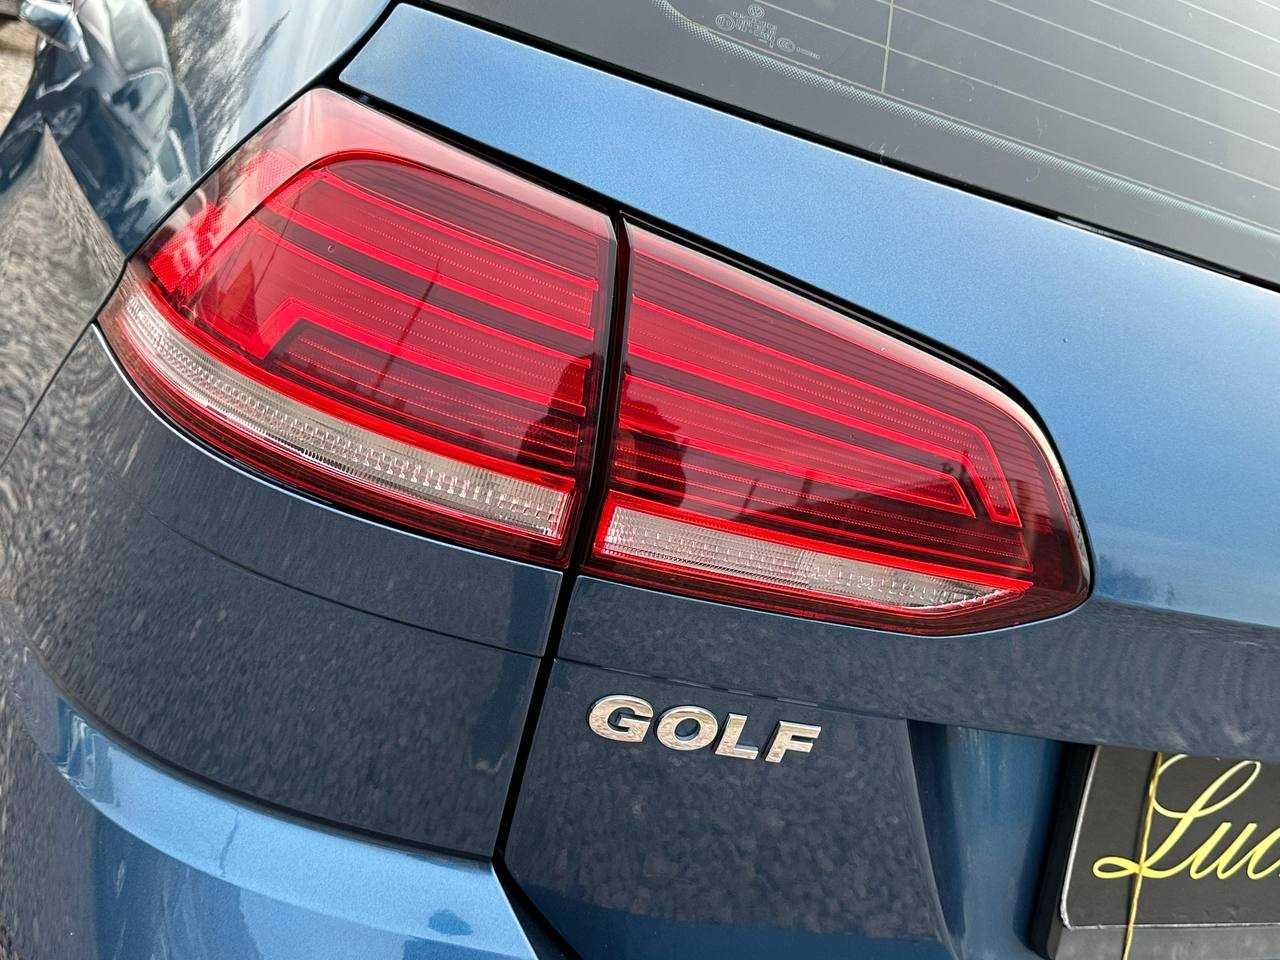 Авто Volkswagen Golf 2019